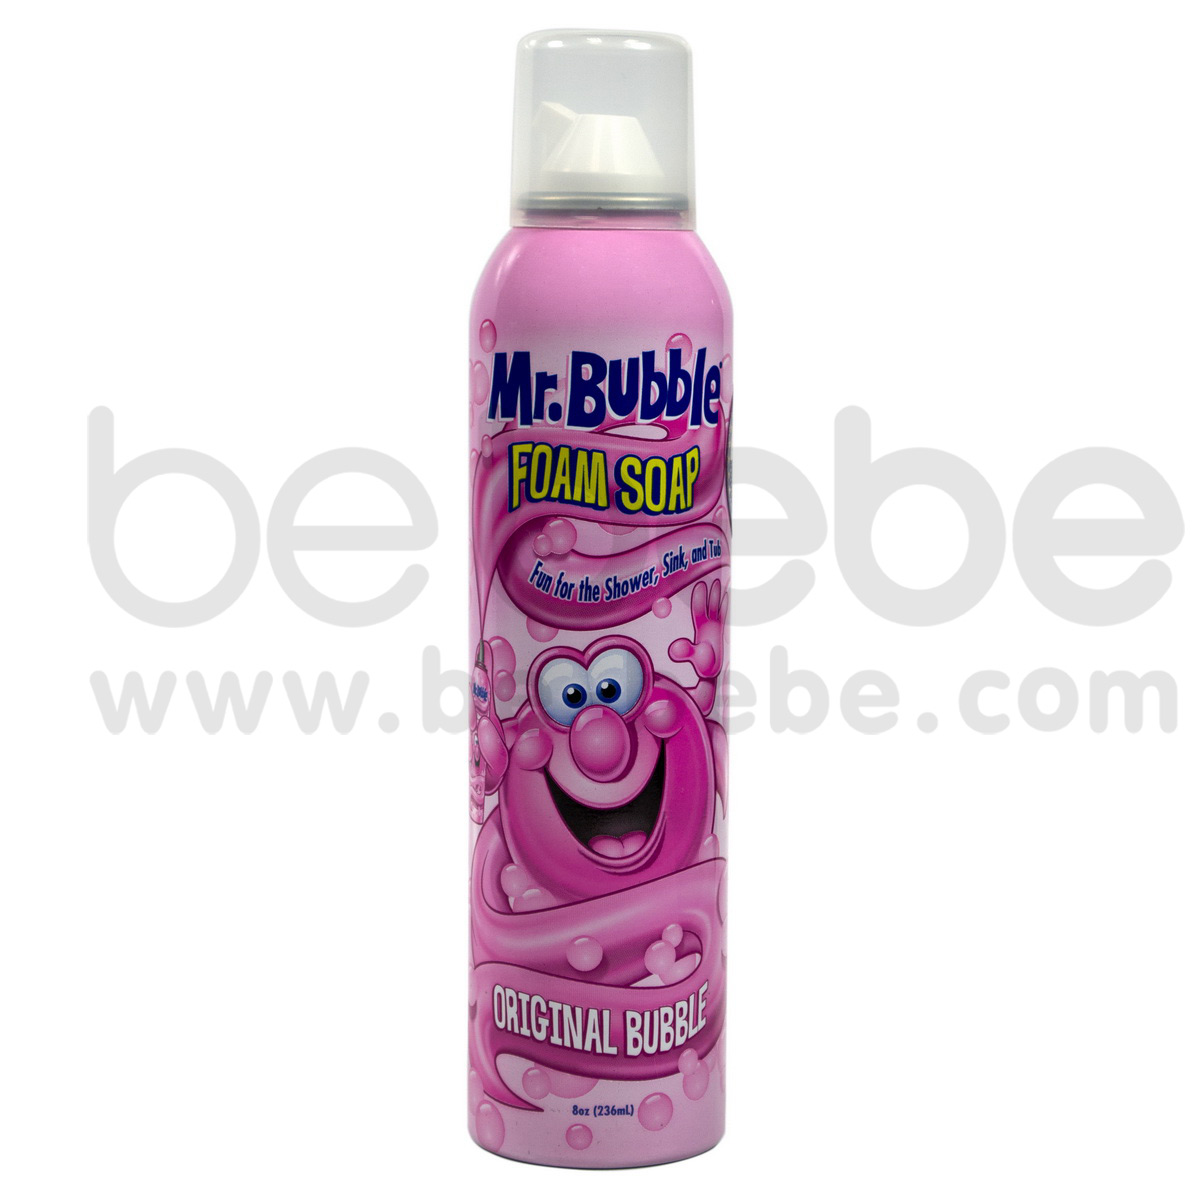 Mr.Bubble : Foam Soap, Original Bubble, 8 oz